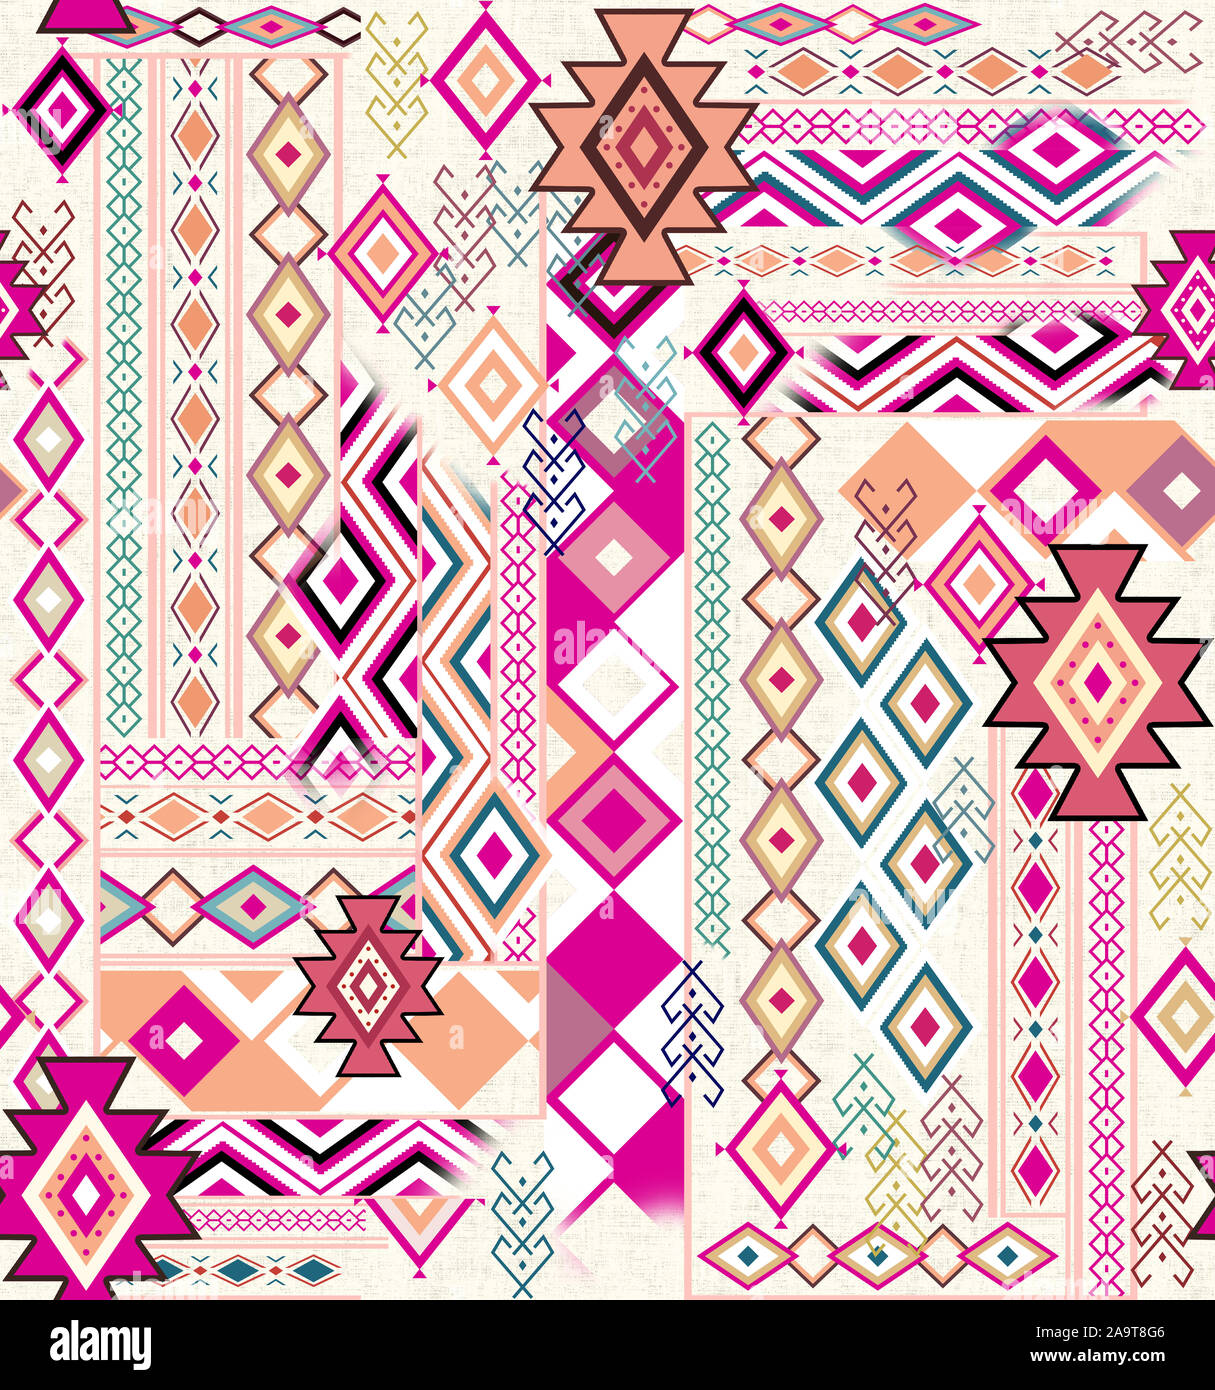 Nahtlose Muster. Patchwork Muster mit hellen Farben Diamanten ornament Muster. Ethnische im indischen Stil. Stockfoto